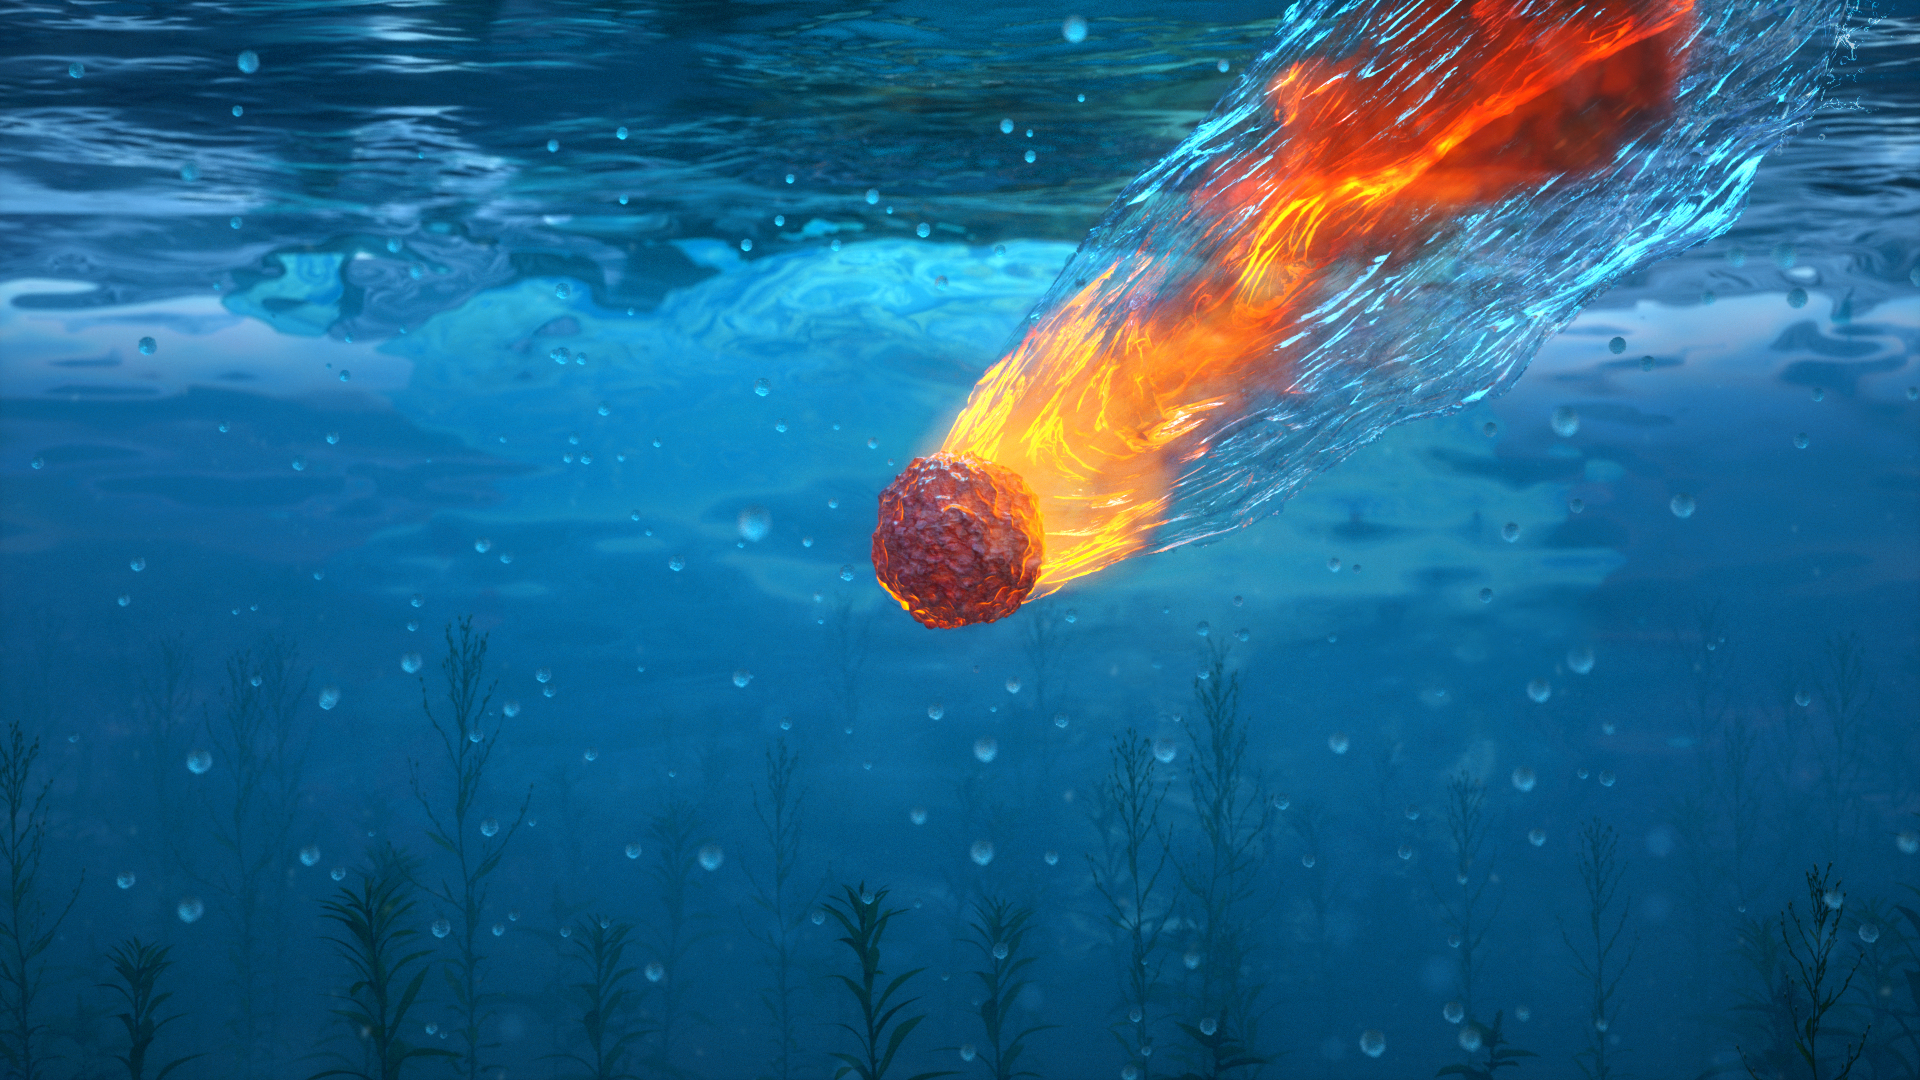 Meteorite Water Water Drops Bubbles Underwater Growth Fire Smoke Deep Sea Falling Seaweed Texture De 1920x1080